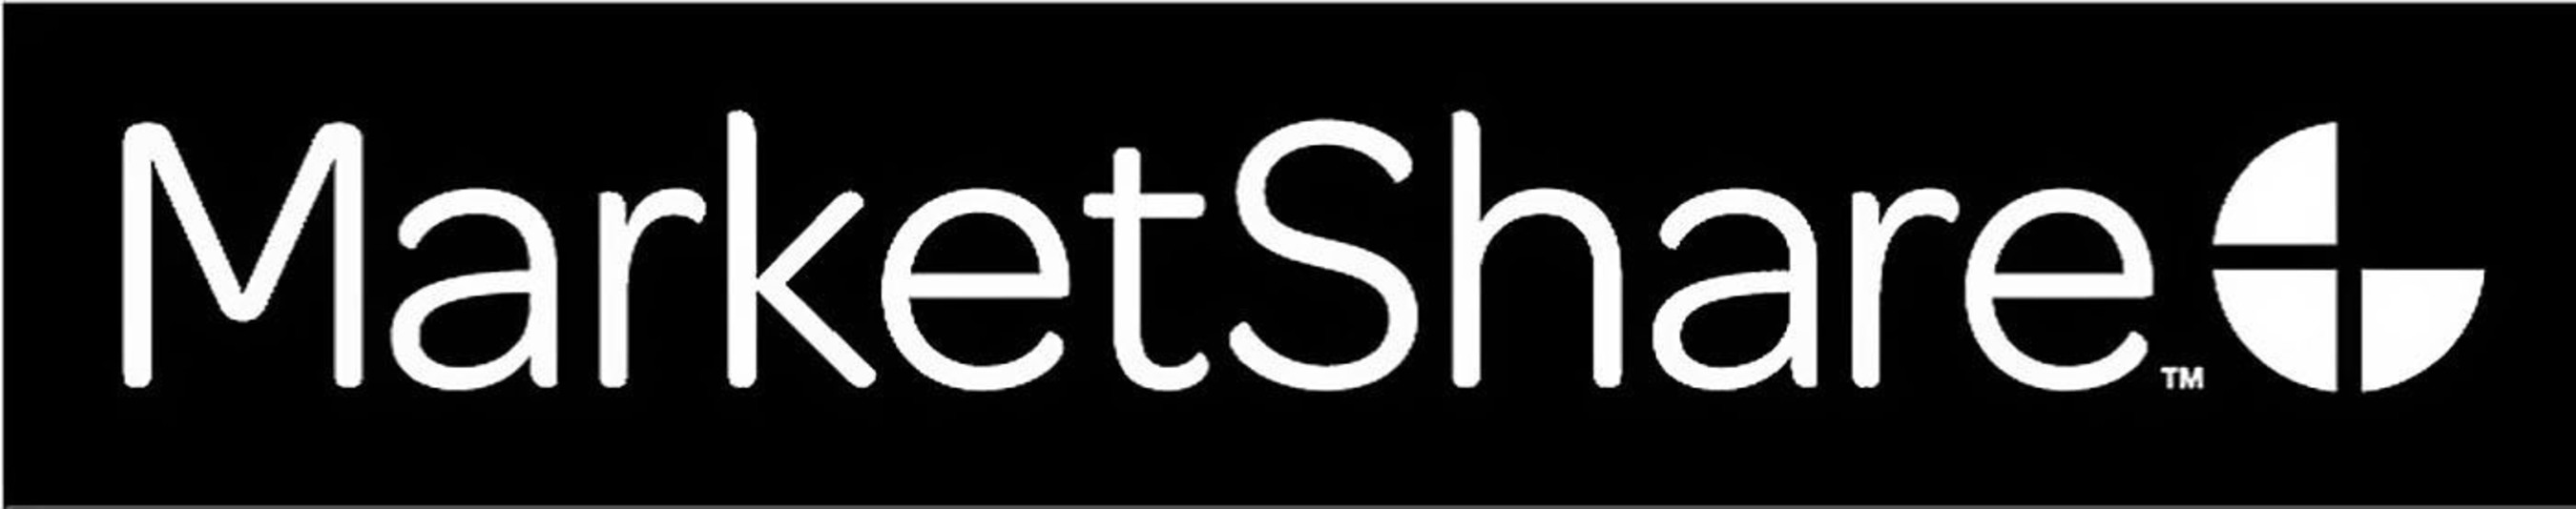 MarketShare logo. (PRNewsFoto/MarketShare) (PRNewsFoto/)